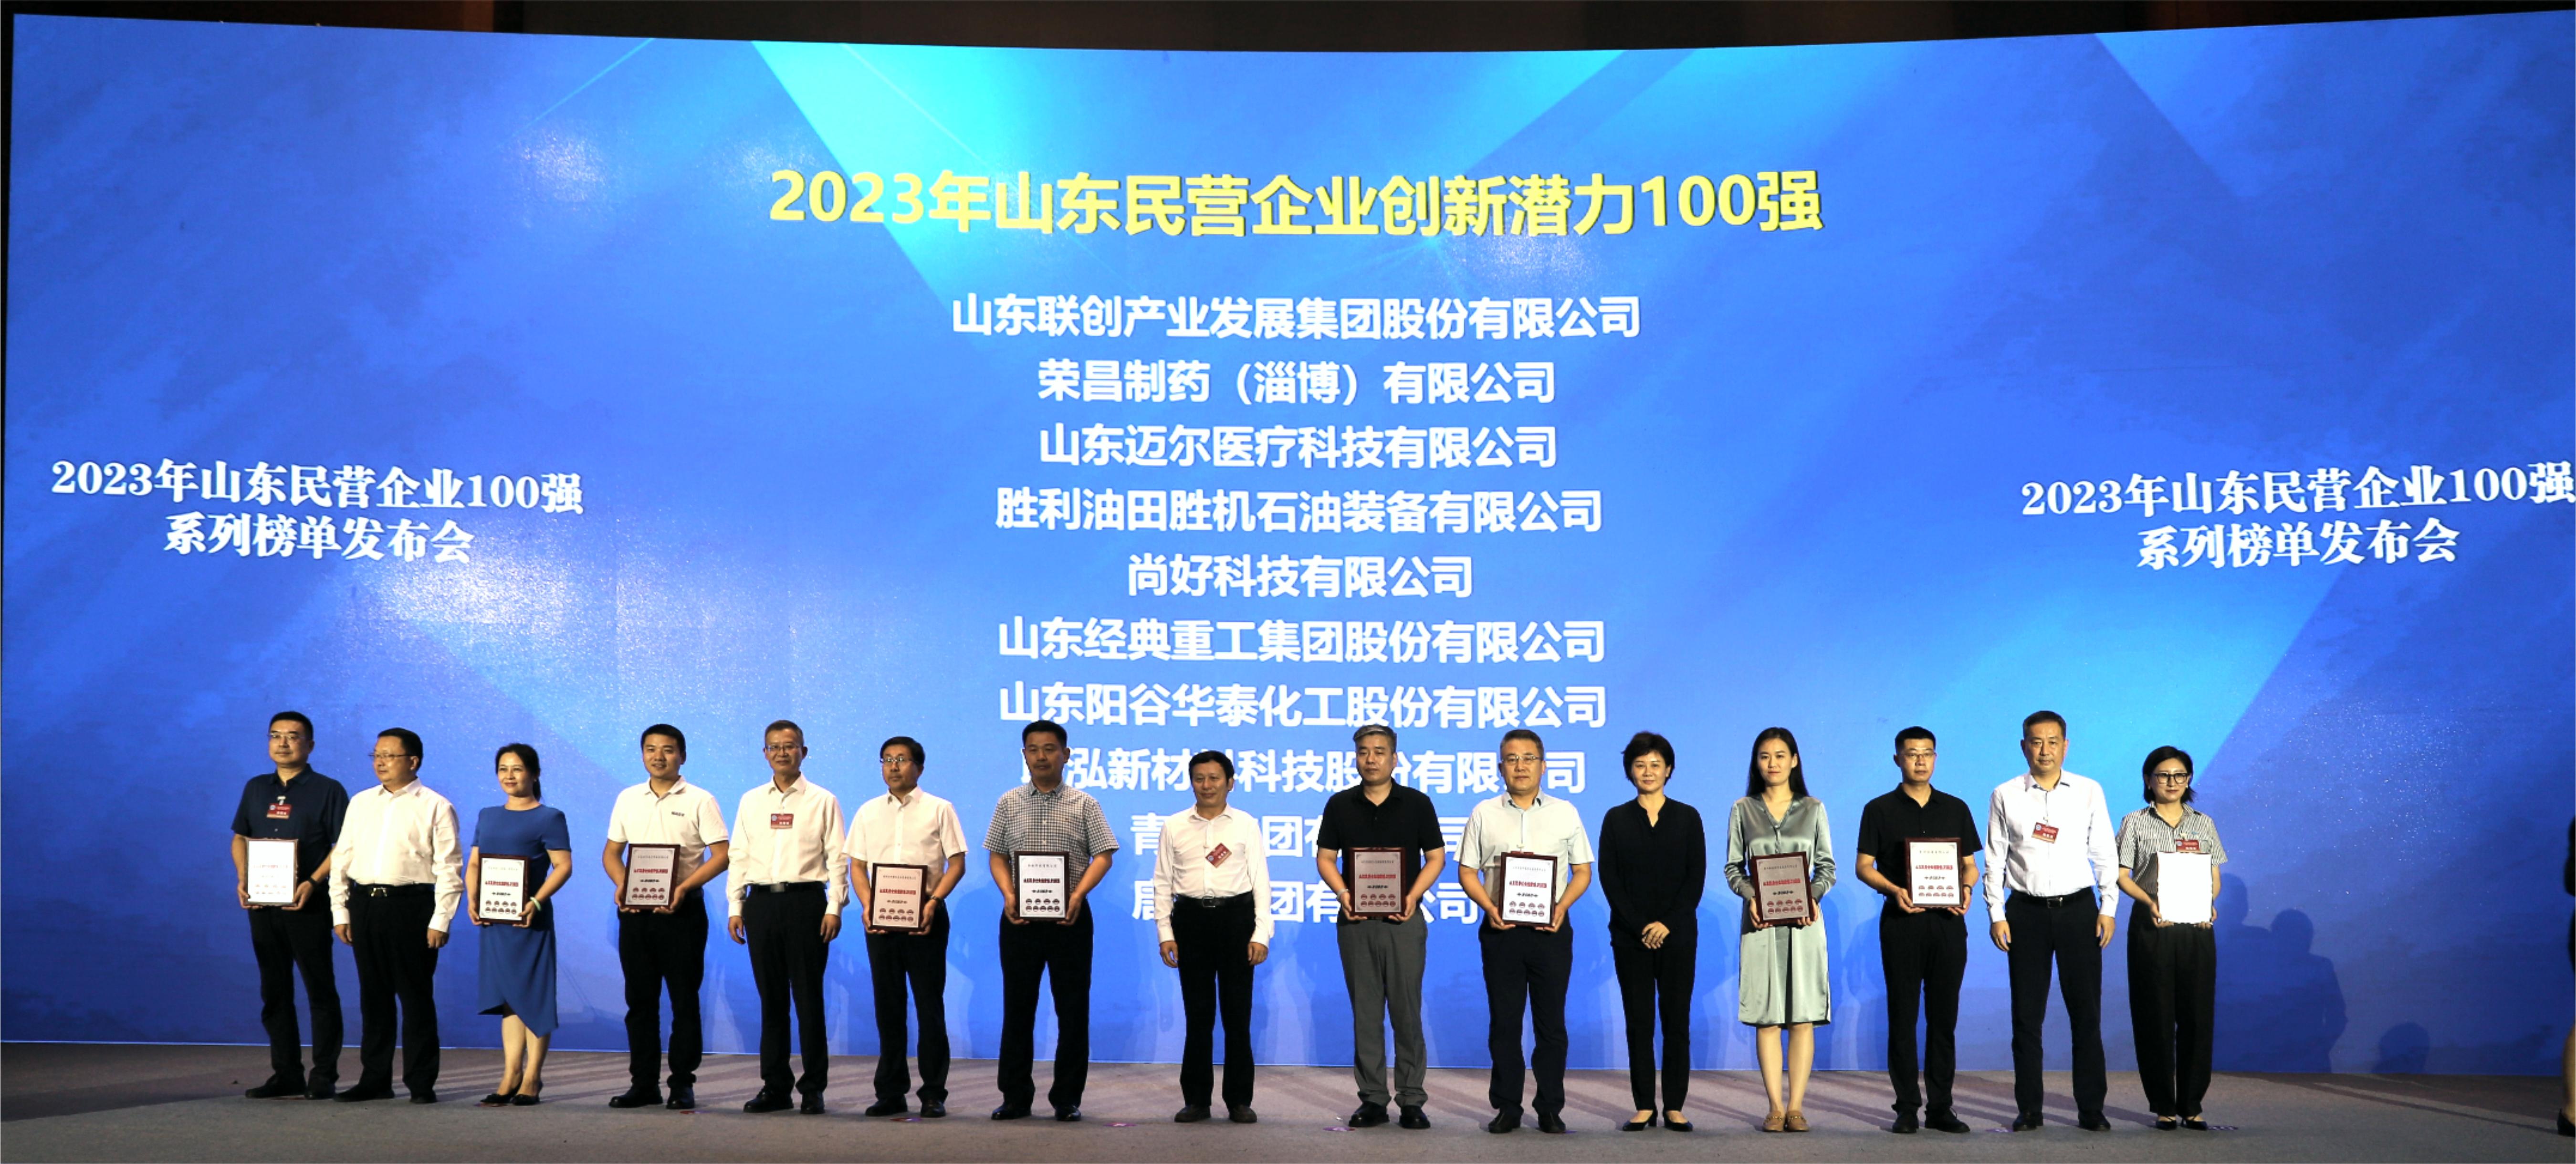 BWIN·必赢(中国)唯一官方网站·Green Moving Future获得 “2023年山东民营企业创新潜力100强”称号